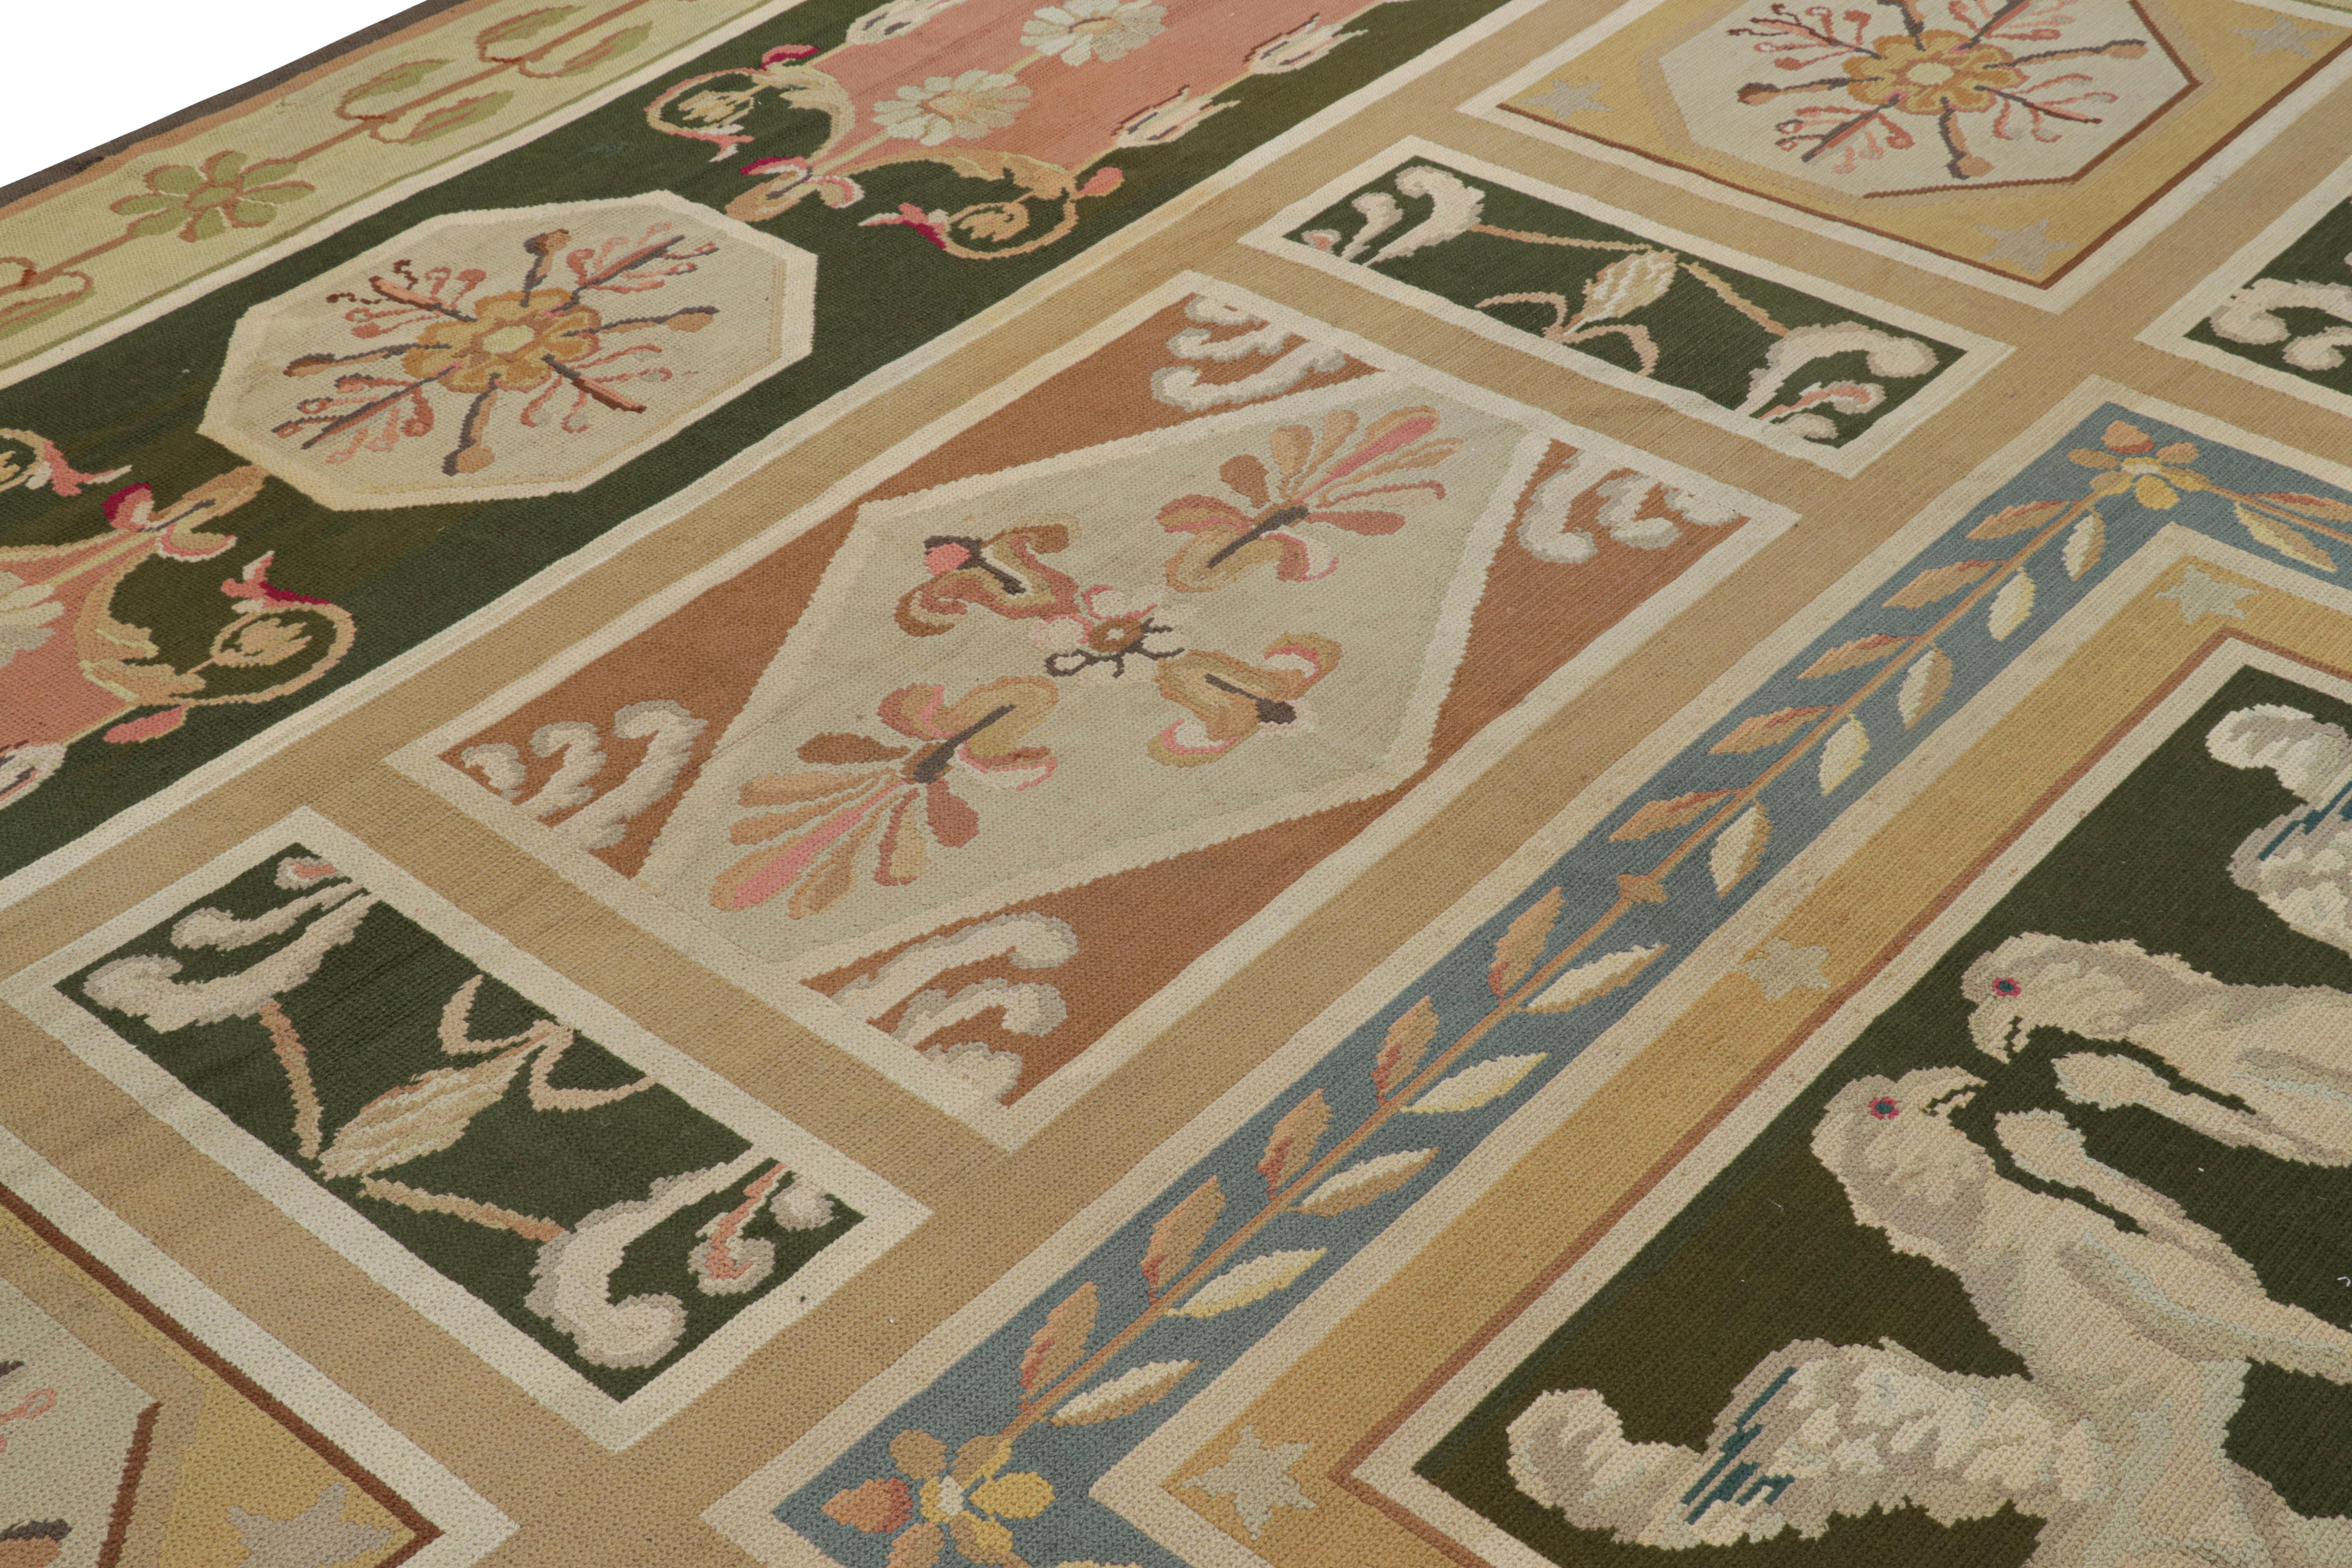 Fabriqué à la main en laine, ce tapis à l'aiguille portugais antique de 12 x 17 est une nouvelle pièce rare et surdimensionnée de la collection de tapis européens de Rug & Kilim, dont on pense qu'elle date du début du 20e siècle. 

Sur le Design :